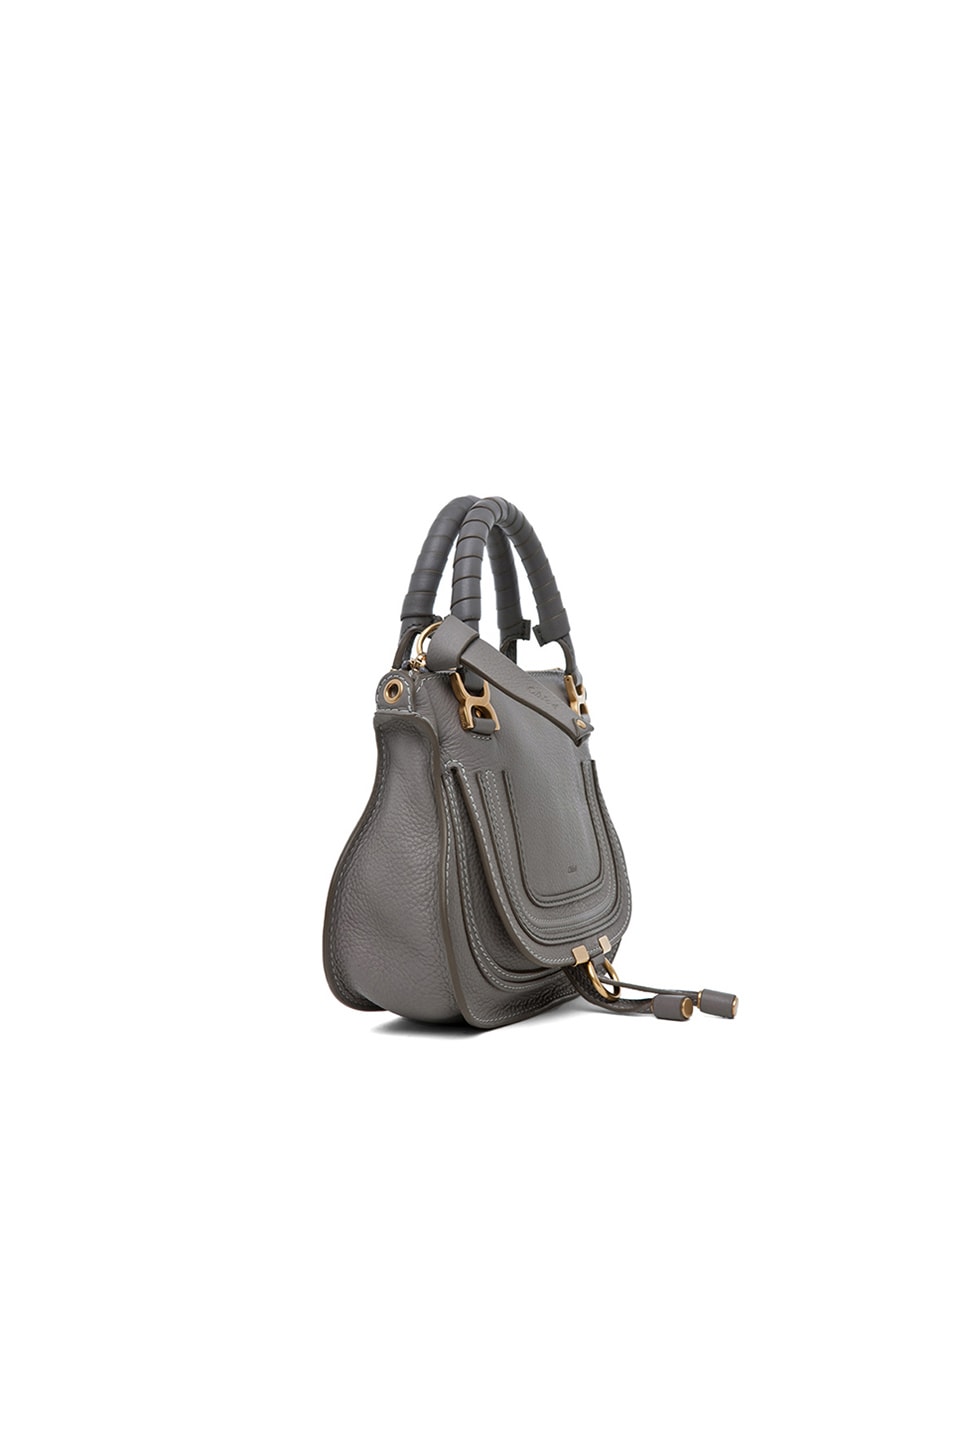 Chloe Mini Marcie Bag in Cashmere Grey | FWRD